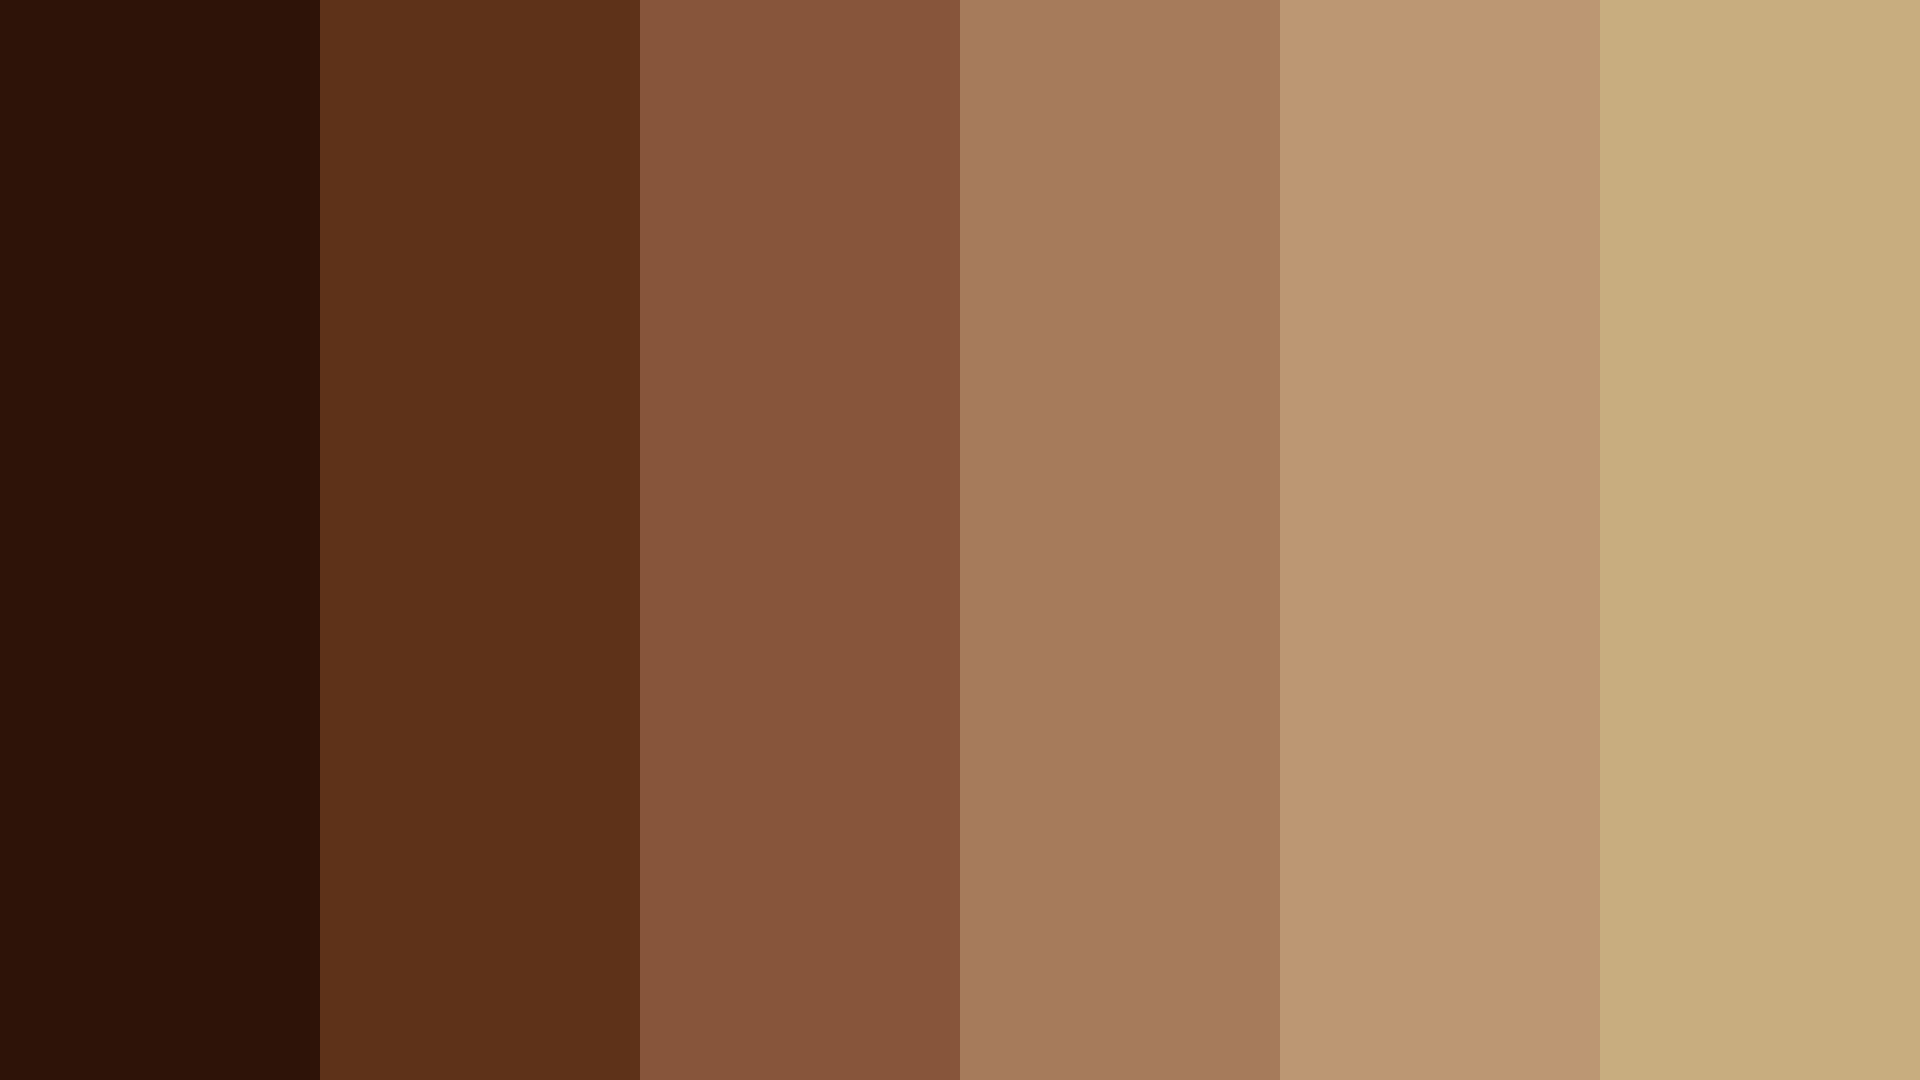 اختبار الالوان: اكتشف ما هو اللون الذي يمثل شخصيتك؟